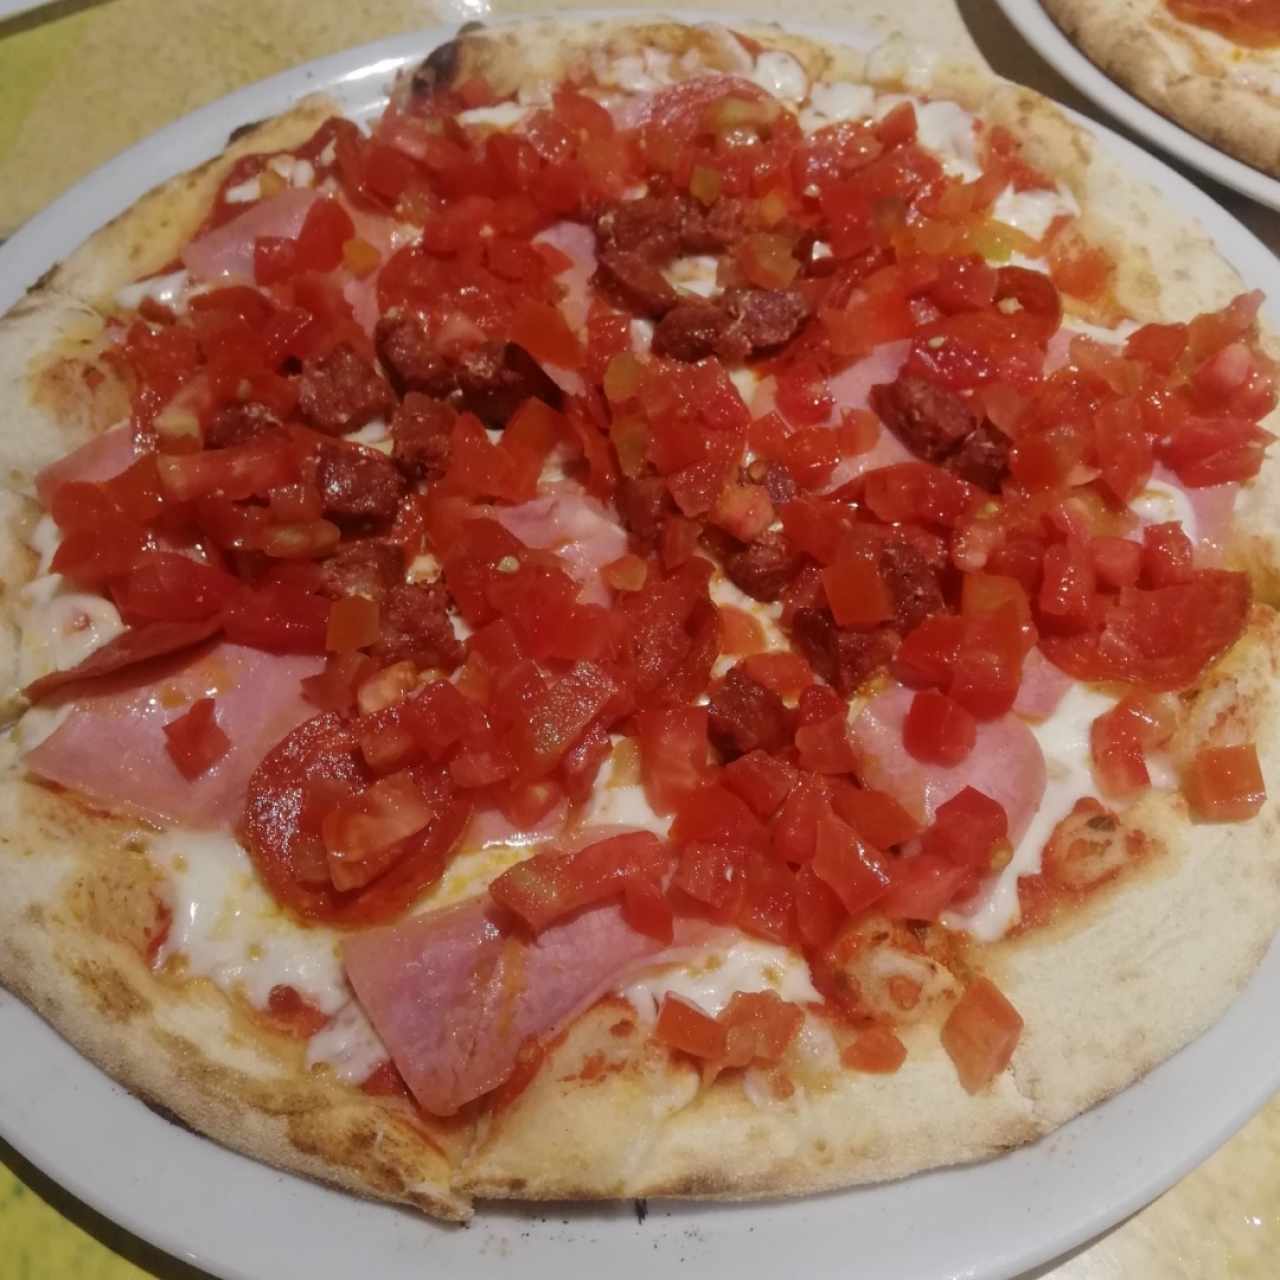 LA PIZZA - Carne & Compañía con extra tomatitos! 